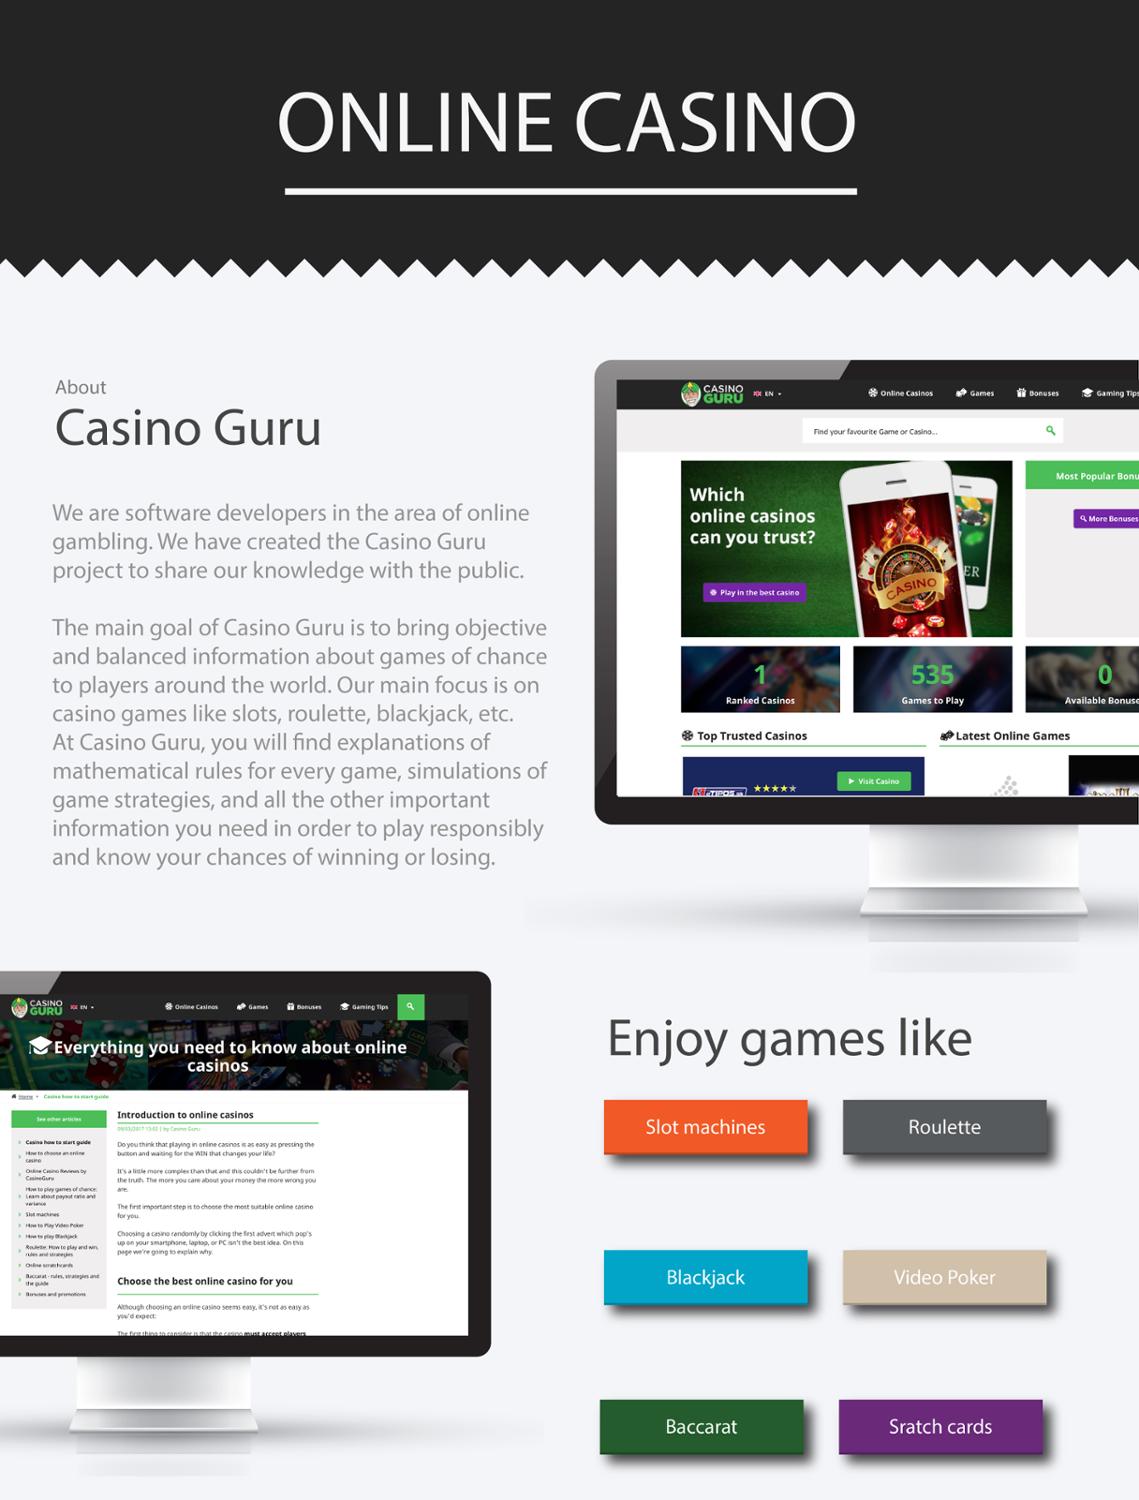 Casino Guru infographic